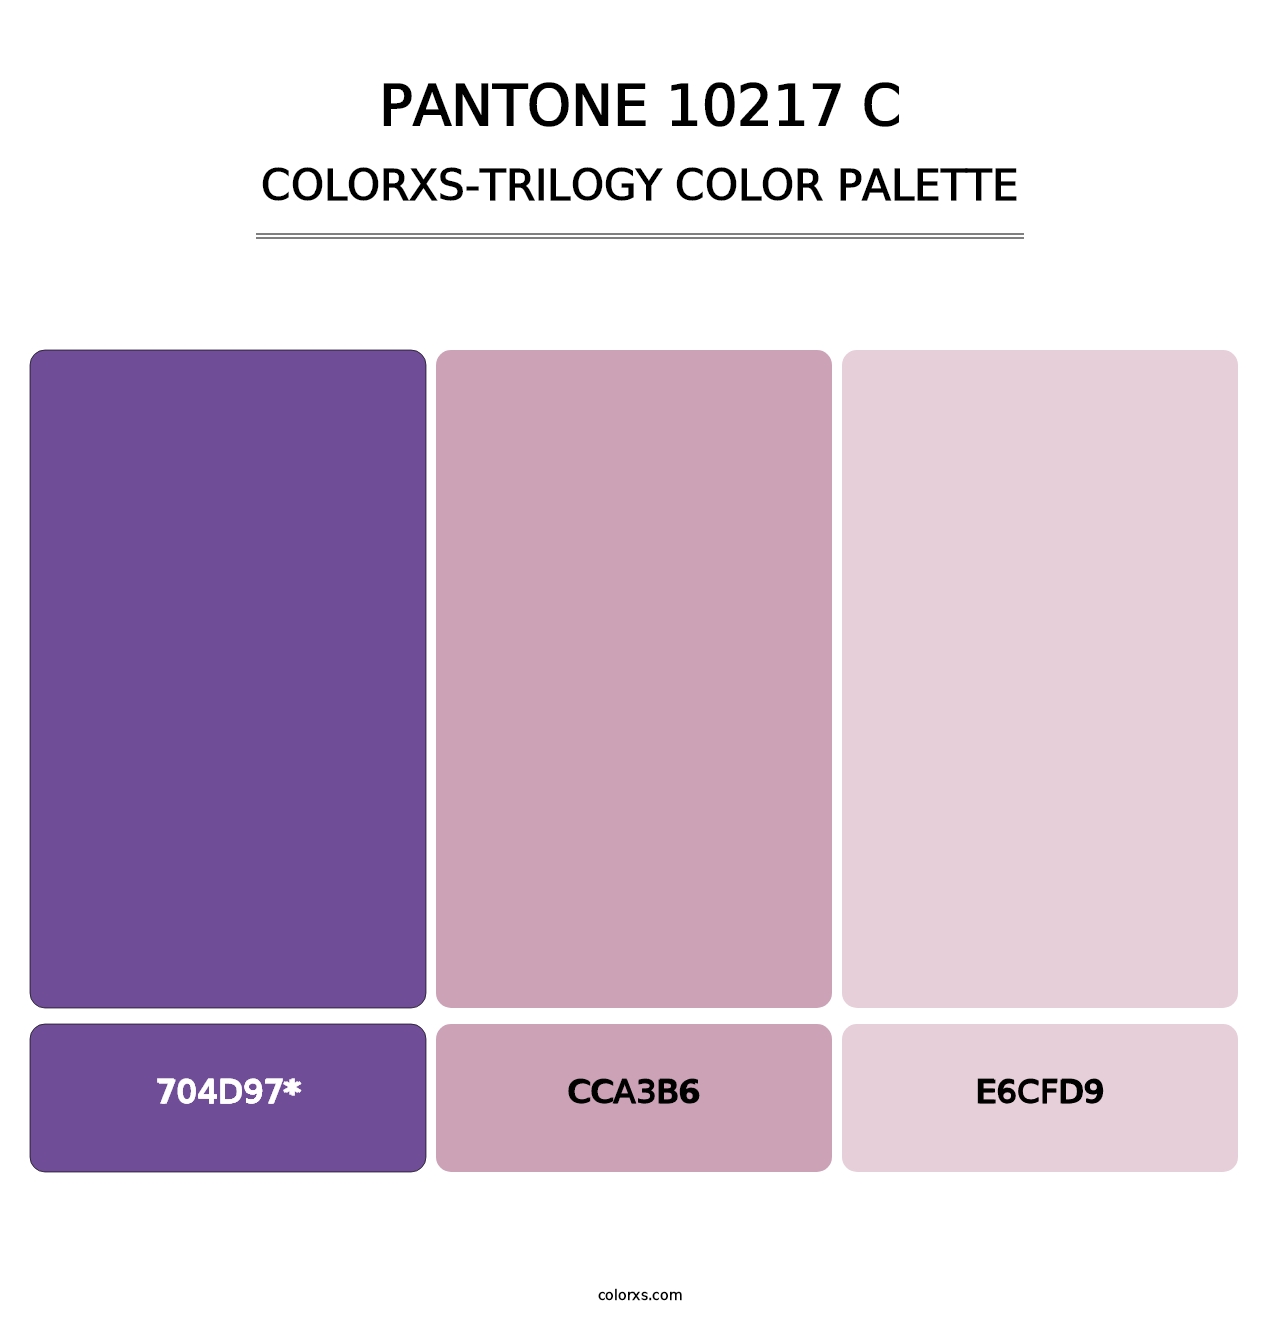 PANTONE 10217 C - Colorxs Trilogy Palette